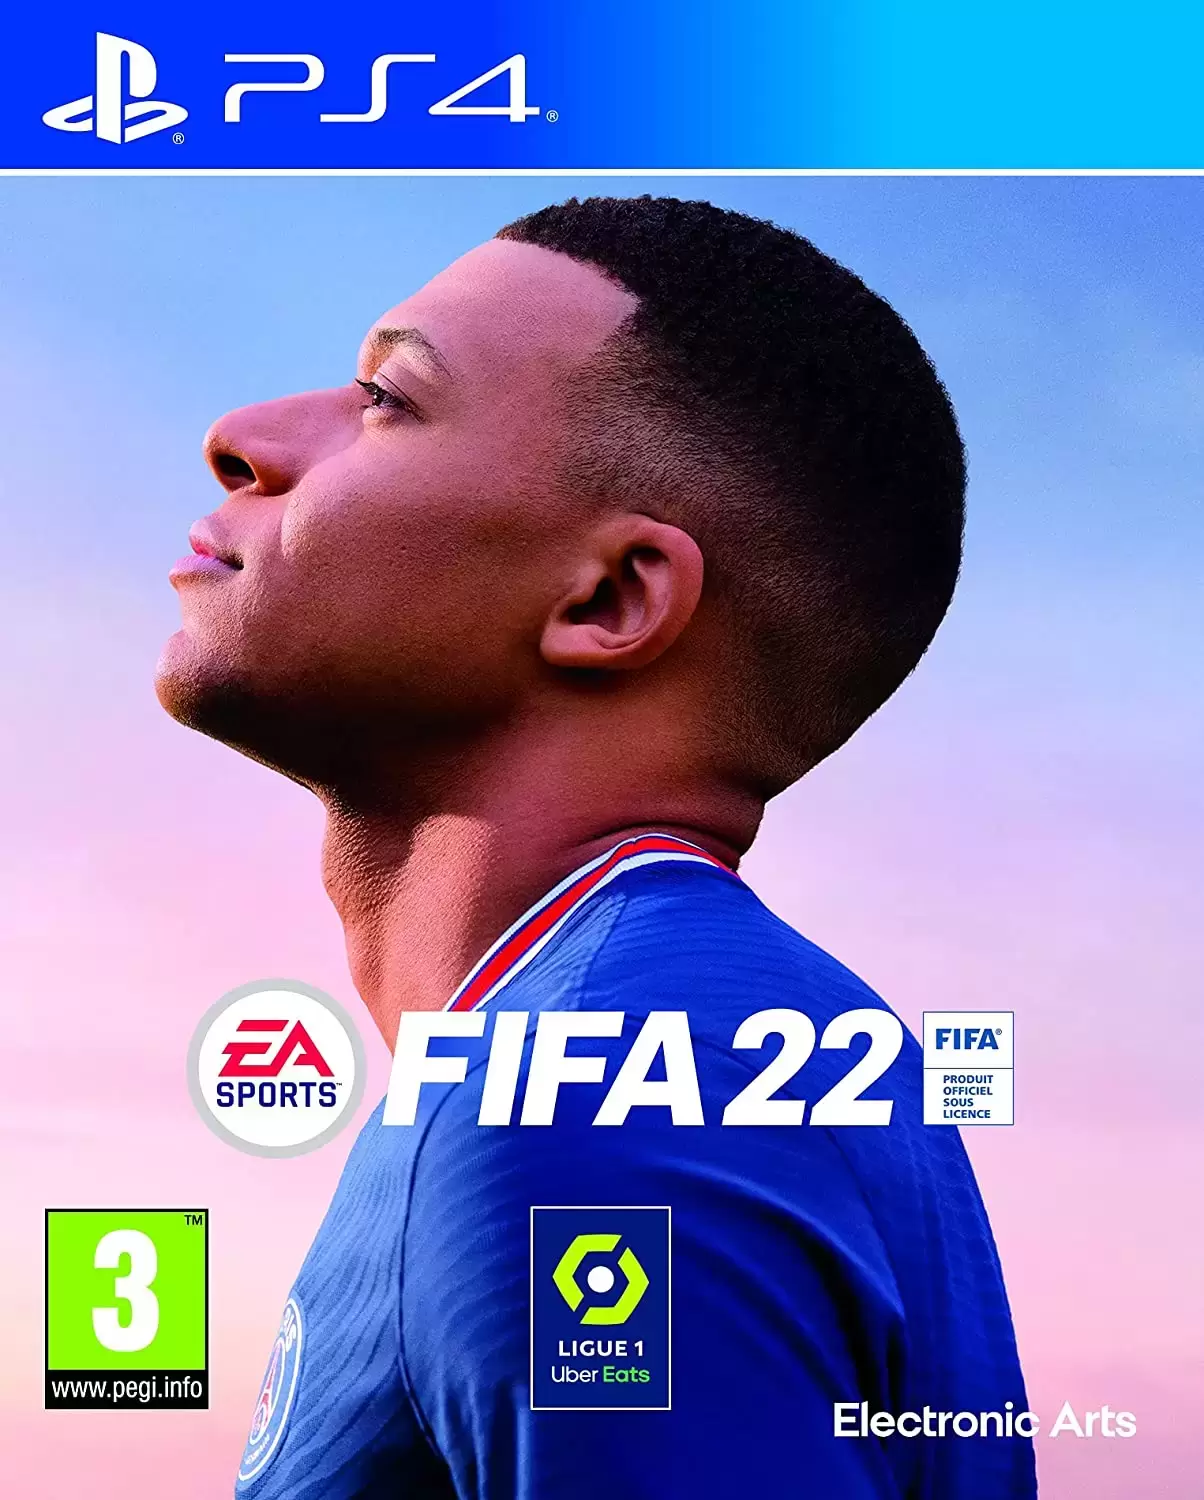 PS4 Games - FIFA 22